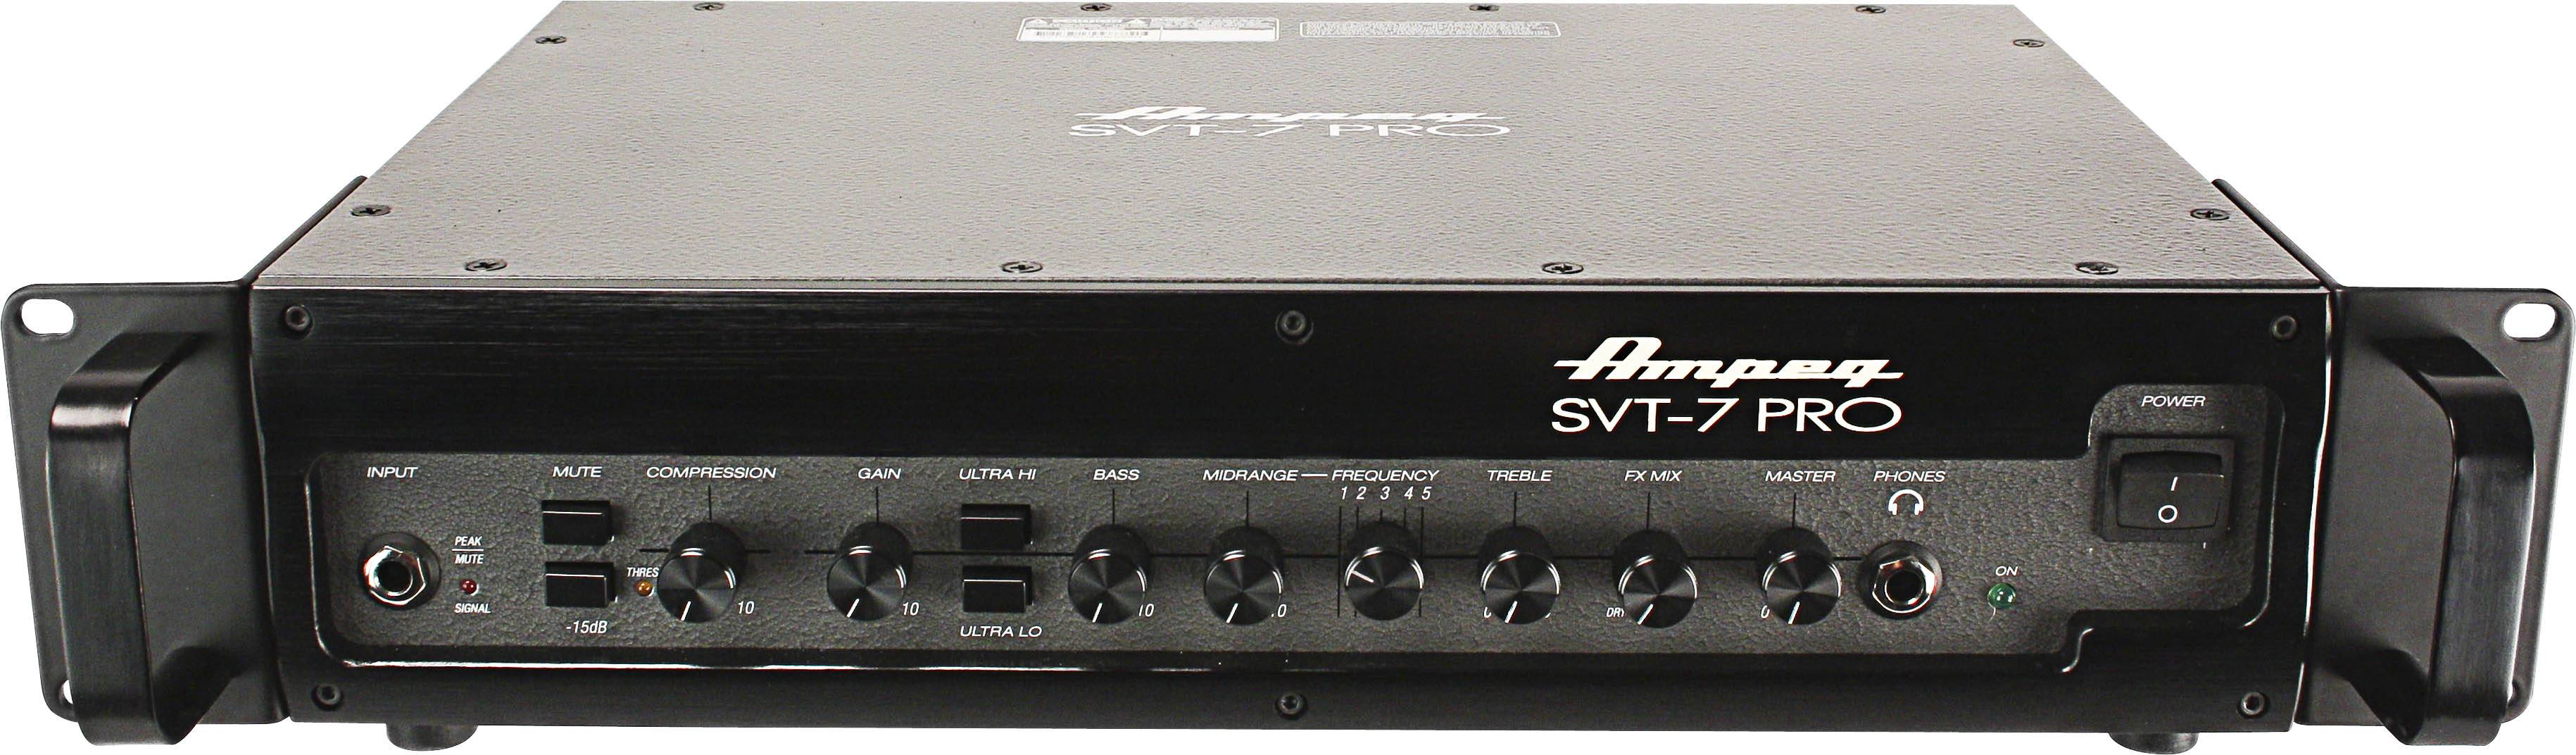 AMPEG PRO SVT-7PRO гибридный басовый усилитель 'голова', 1000 Вт